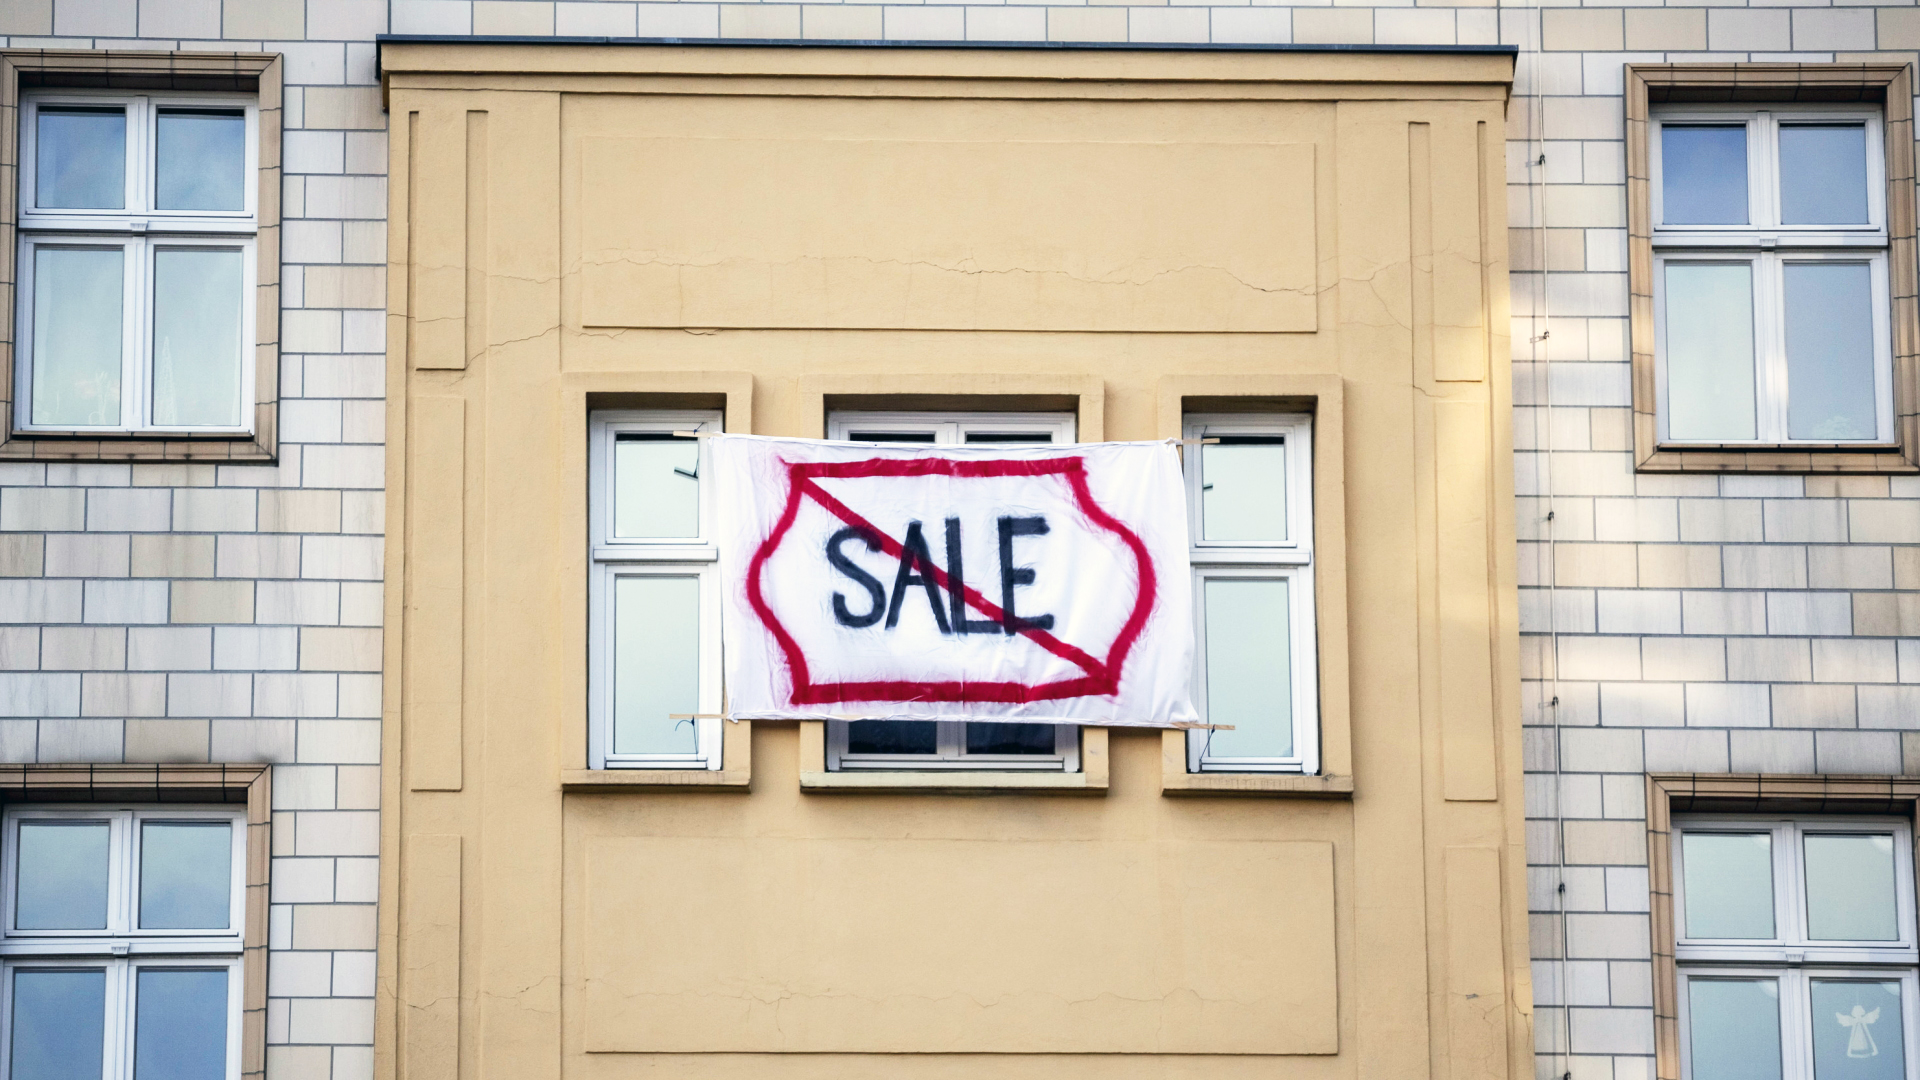 Ein Plakat gegen den Verkauf von Mietwohnungen an die Deutsche Wohnen mit dem durchgestrichenen Wort "Sale" hängt an einer Gebäudefassade.